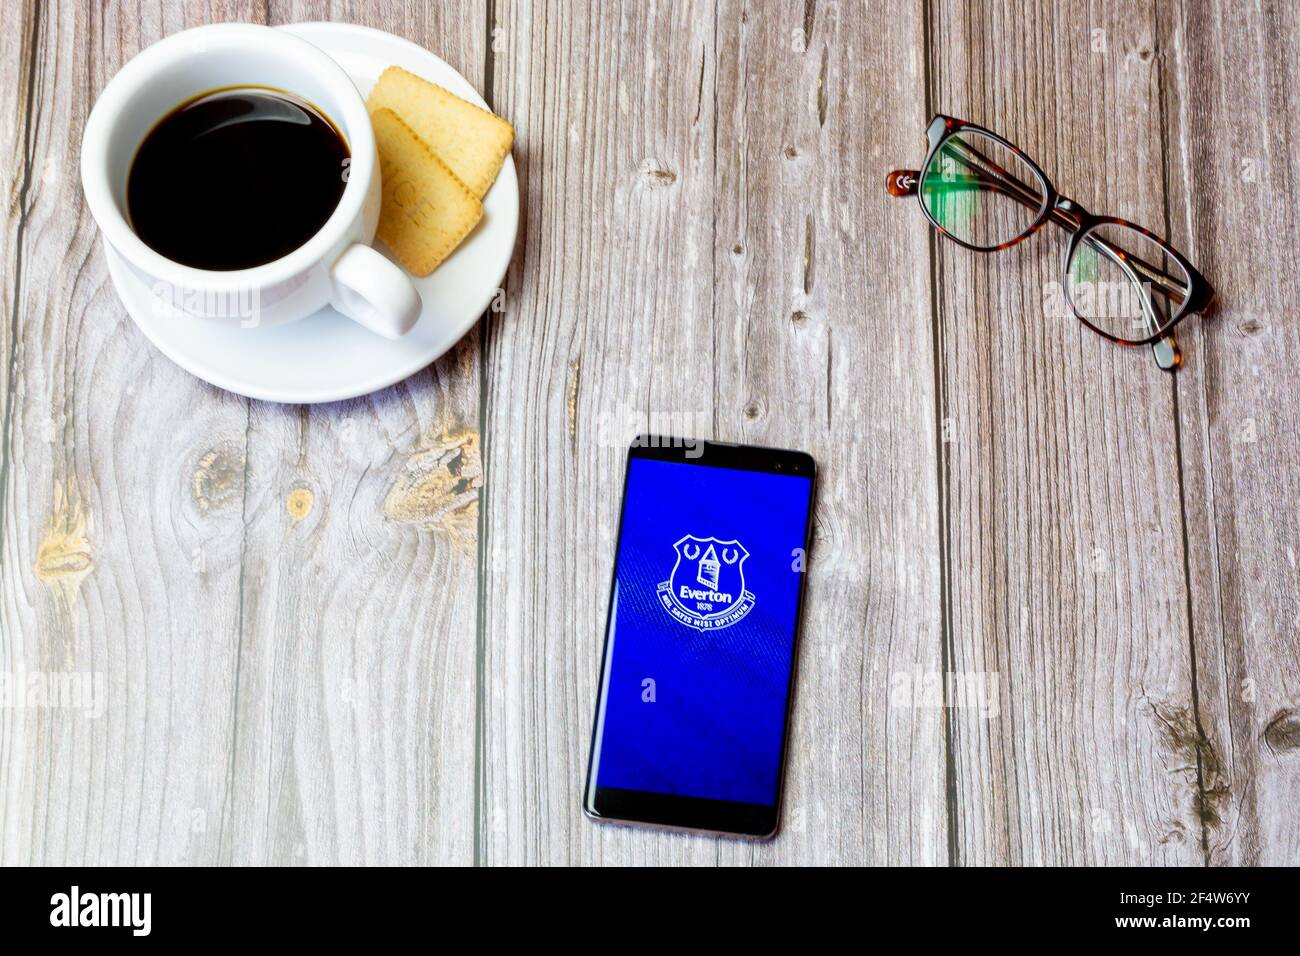 Un teléfono móvil o celular colocado sobre una madera Mesa con la aplicación Everton Football Club abierta en la pantalla Foto de stock